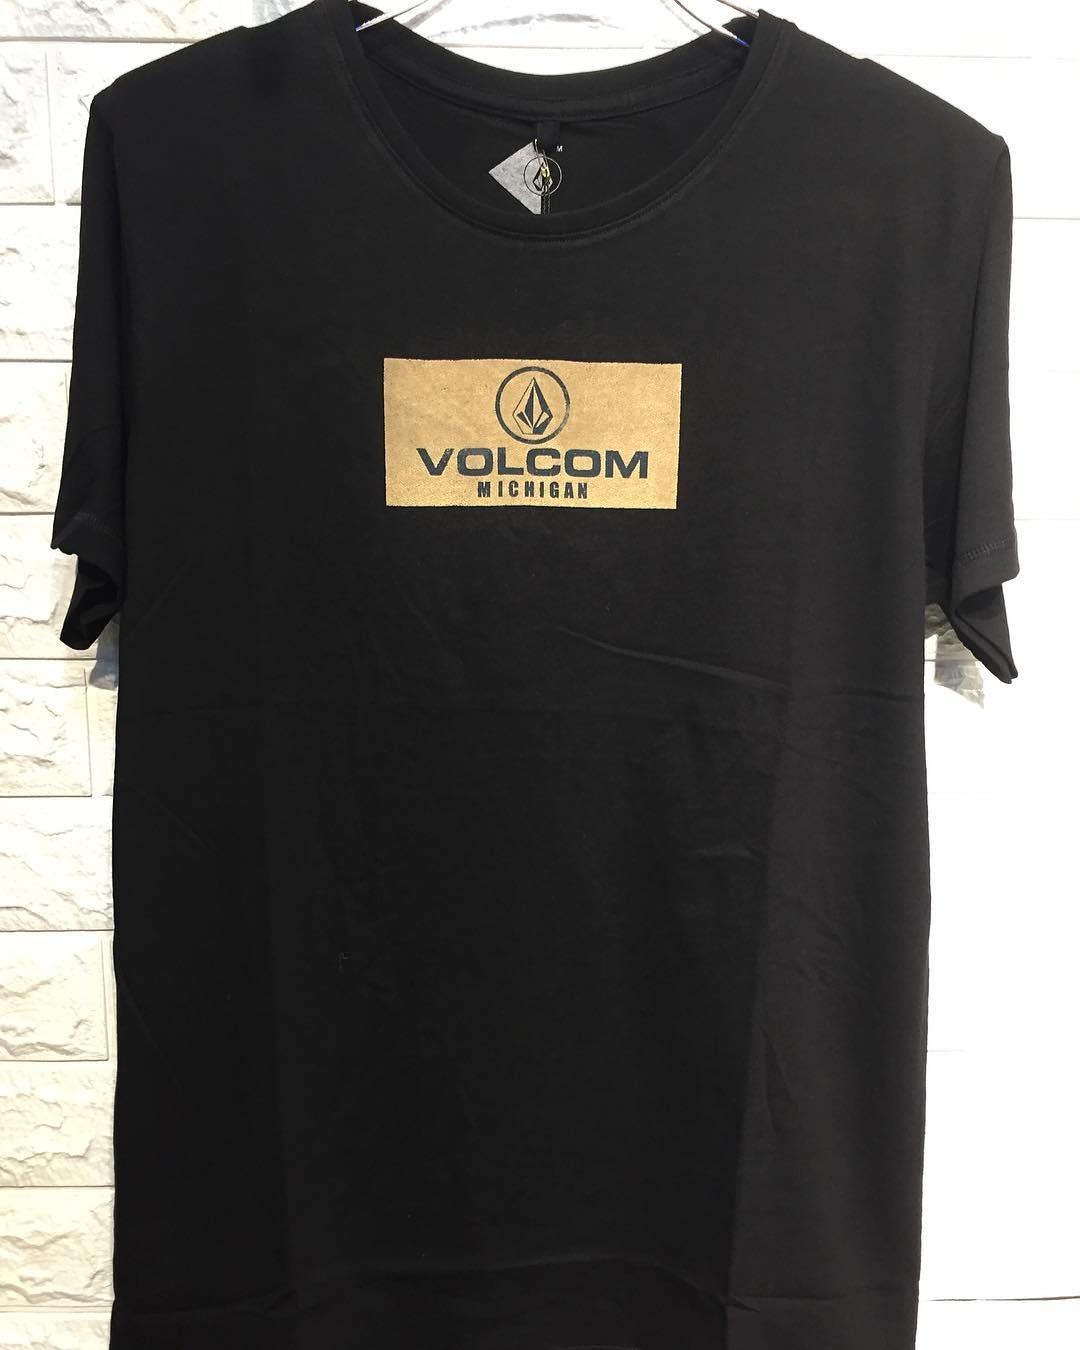 Jual Baju Volcom Original Terlengkap Model Baju Terbaru 2019